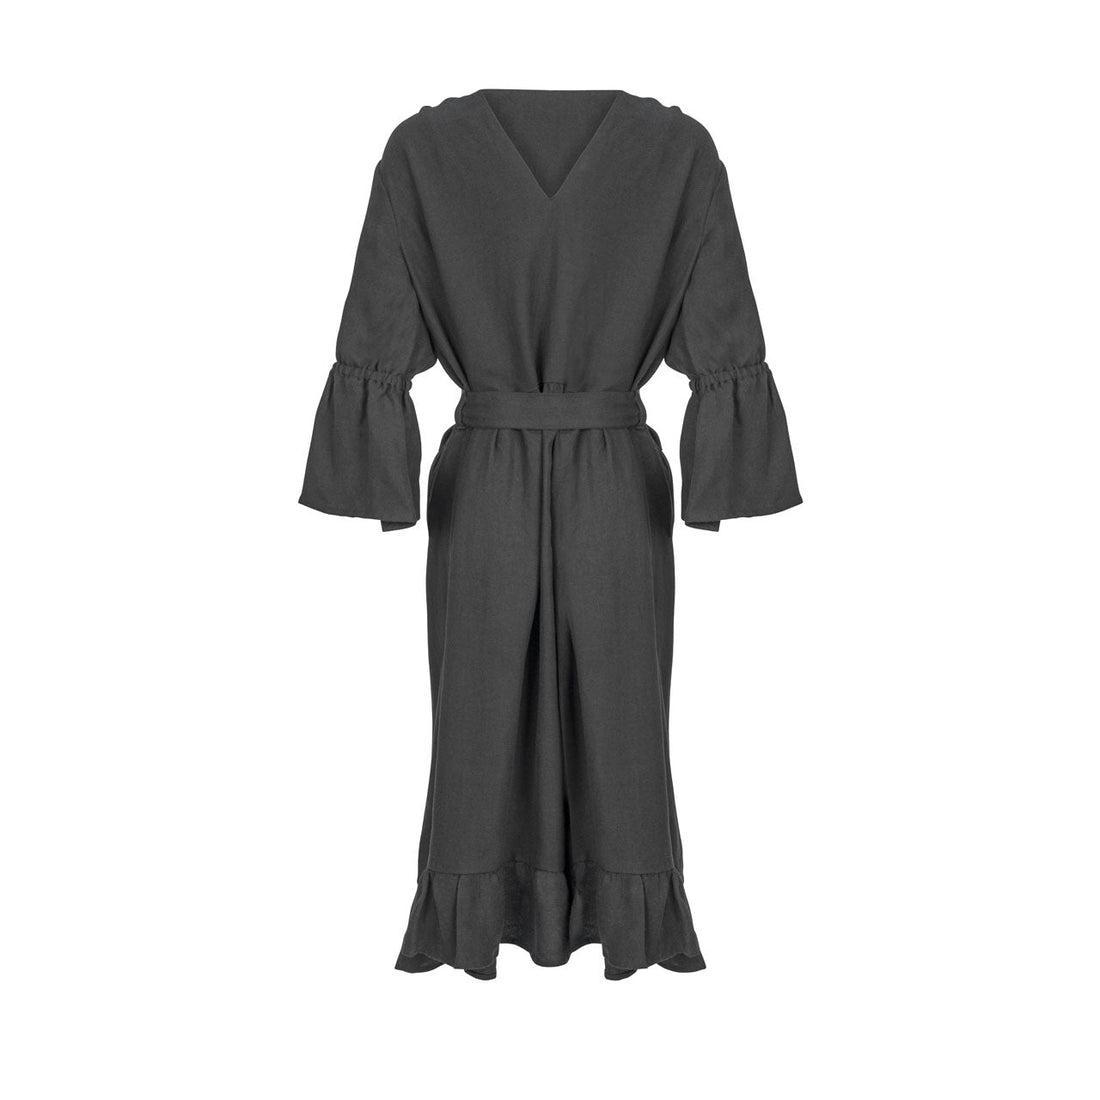 The Adjustable Midi Dress - Black